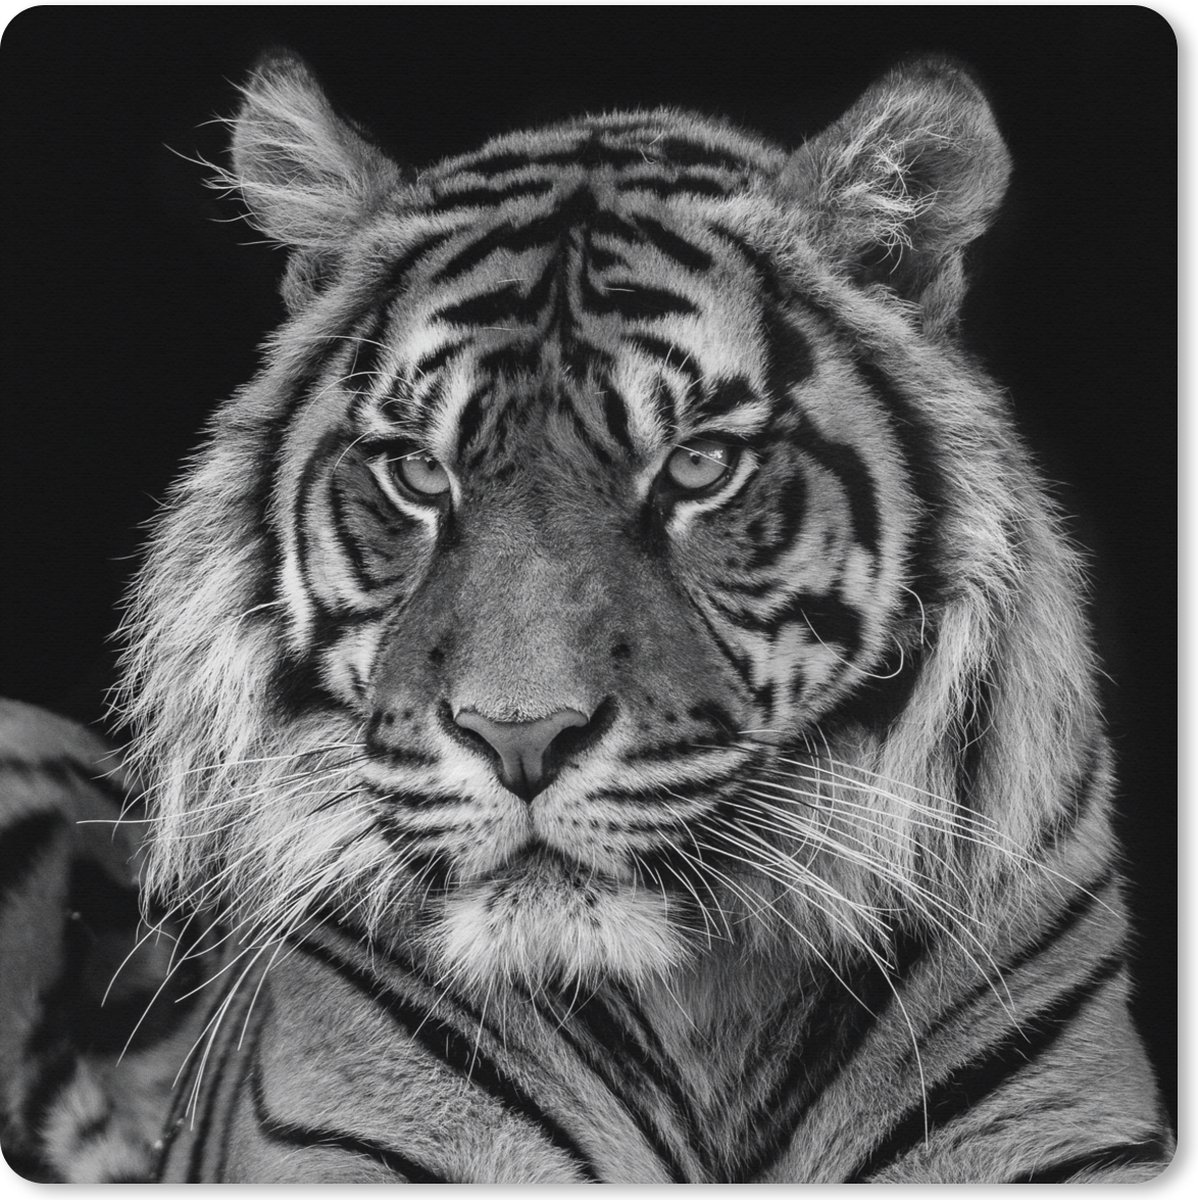 Muismat XXL - Bureau onderlegger - Bureau mat - Sumatraanse tijger op zwarte achtergrond in zwart-wit - 60x60 cm - XXL muismat